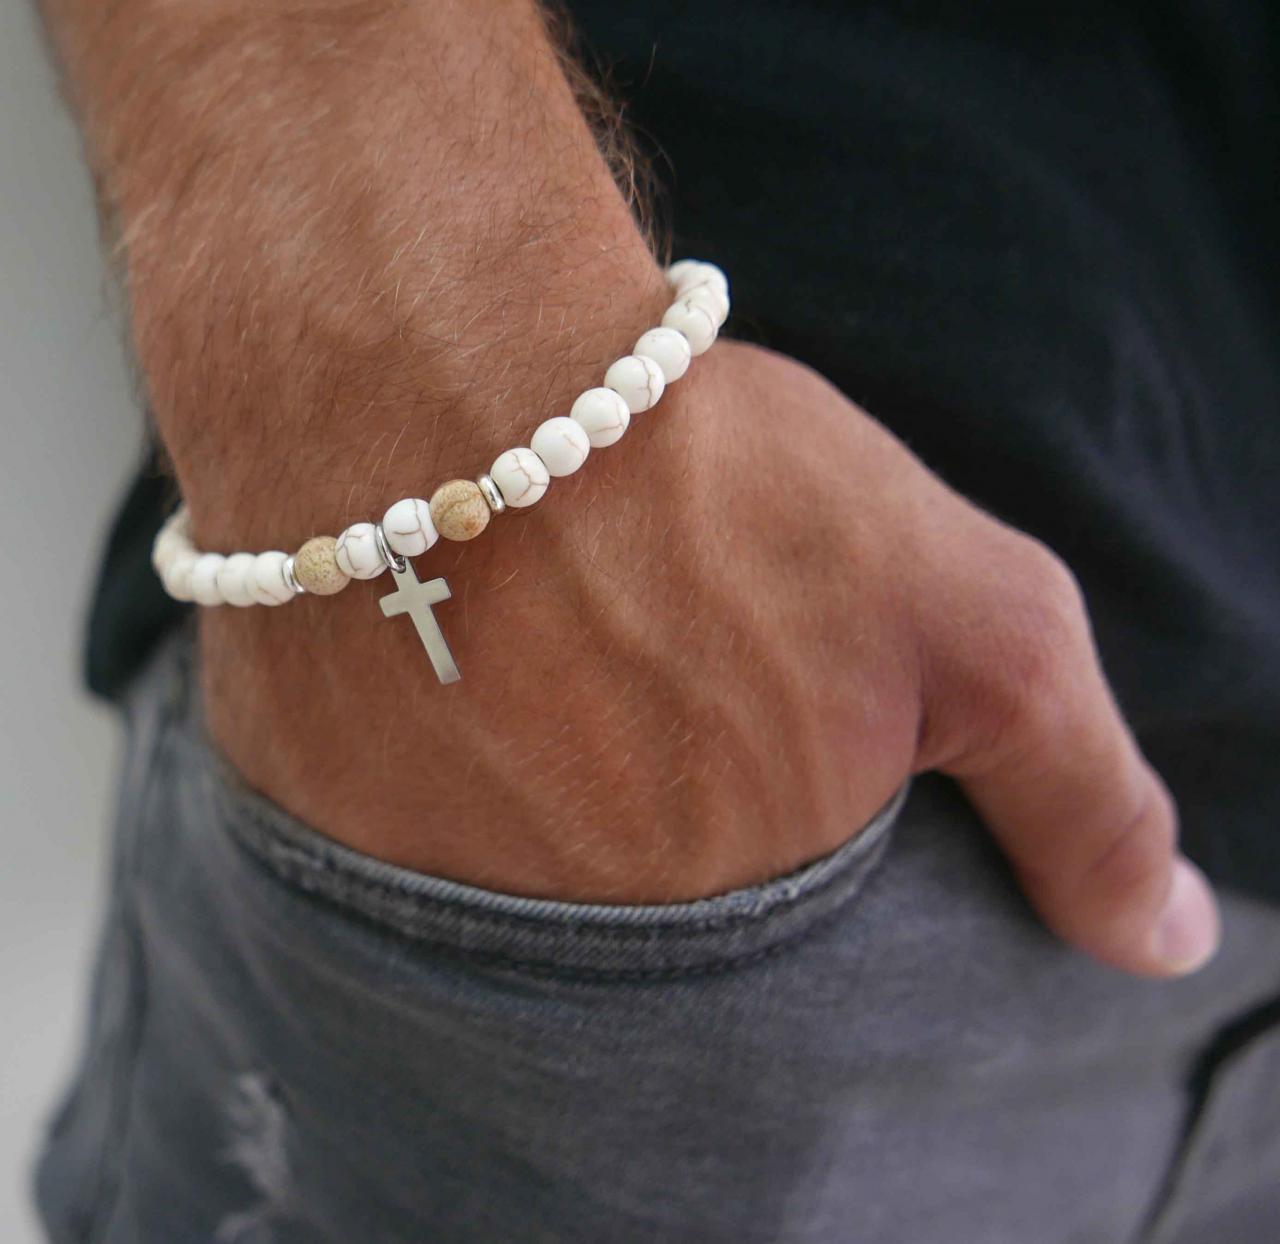 Men's Cross Bracelet - Men's Religious Bracelet - Men's Christian Bracelet - Men's Beaded Bracelet -